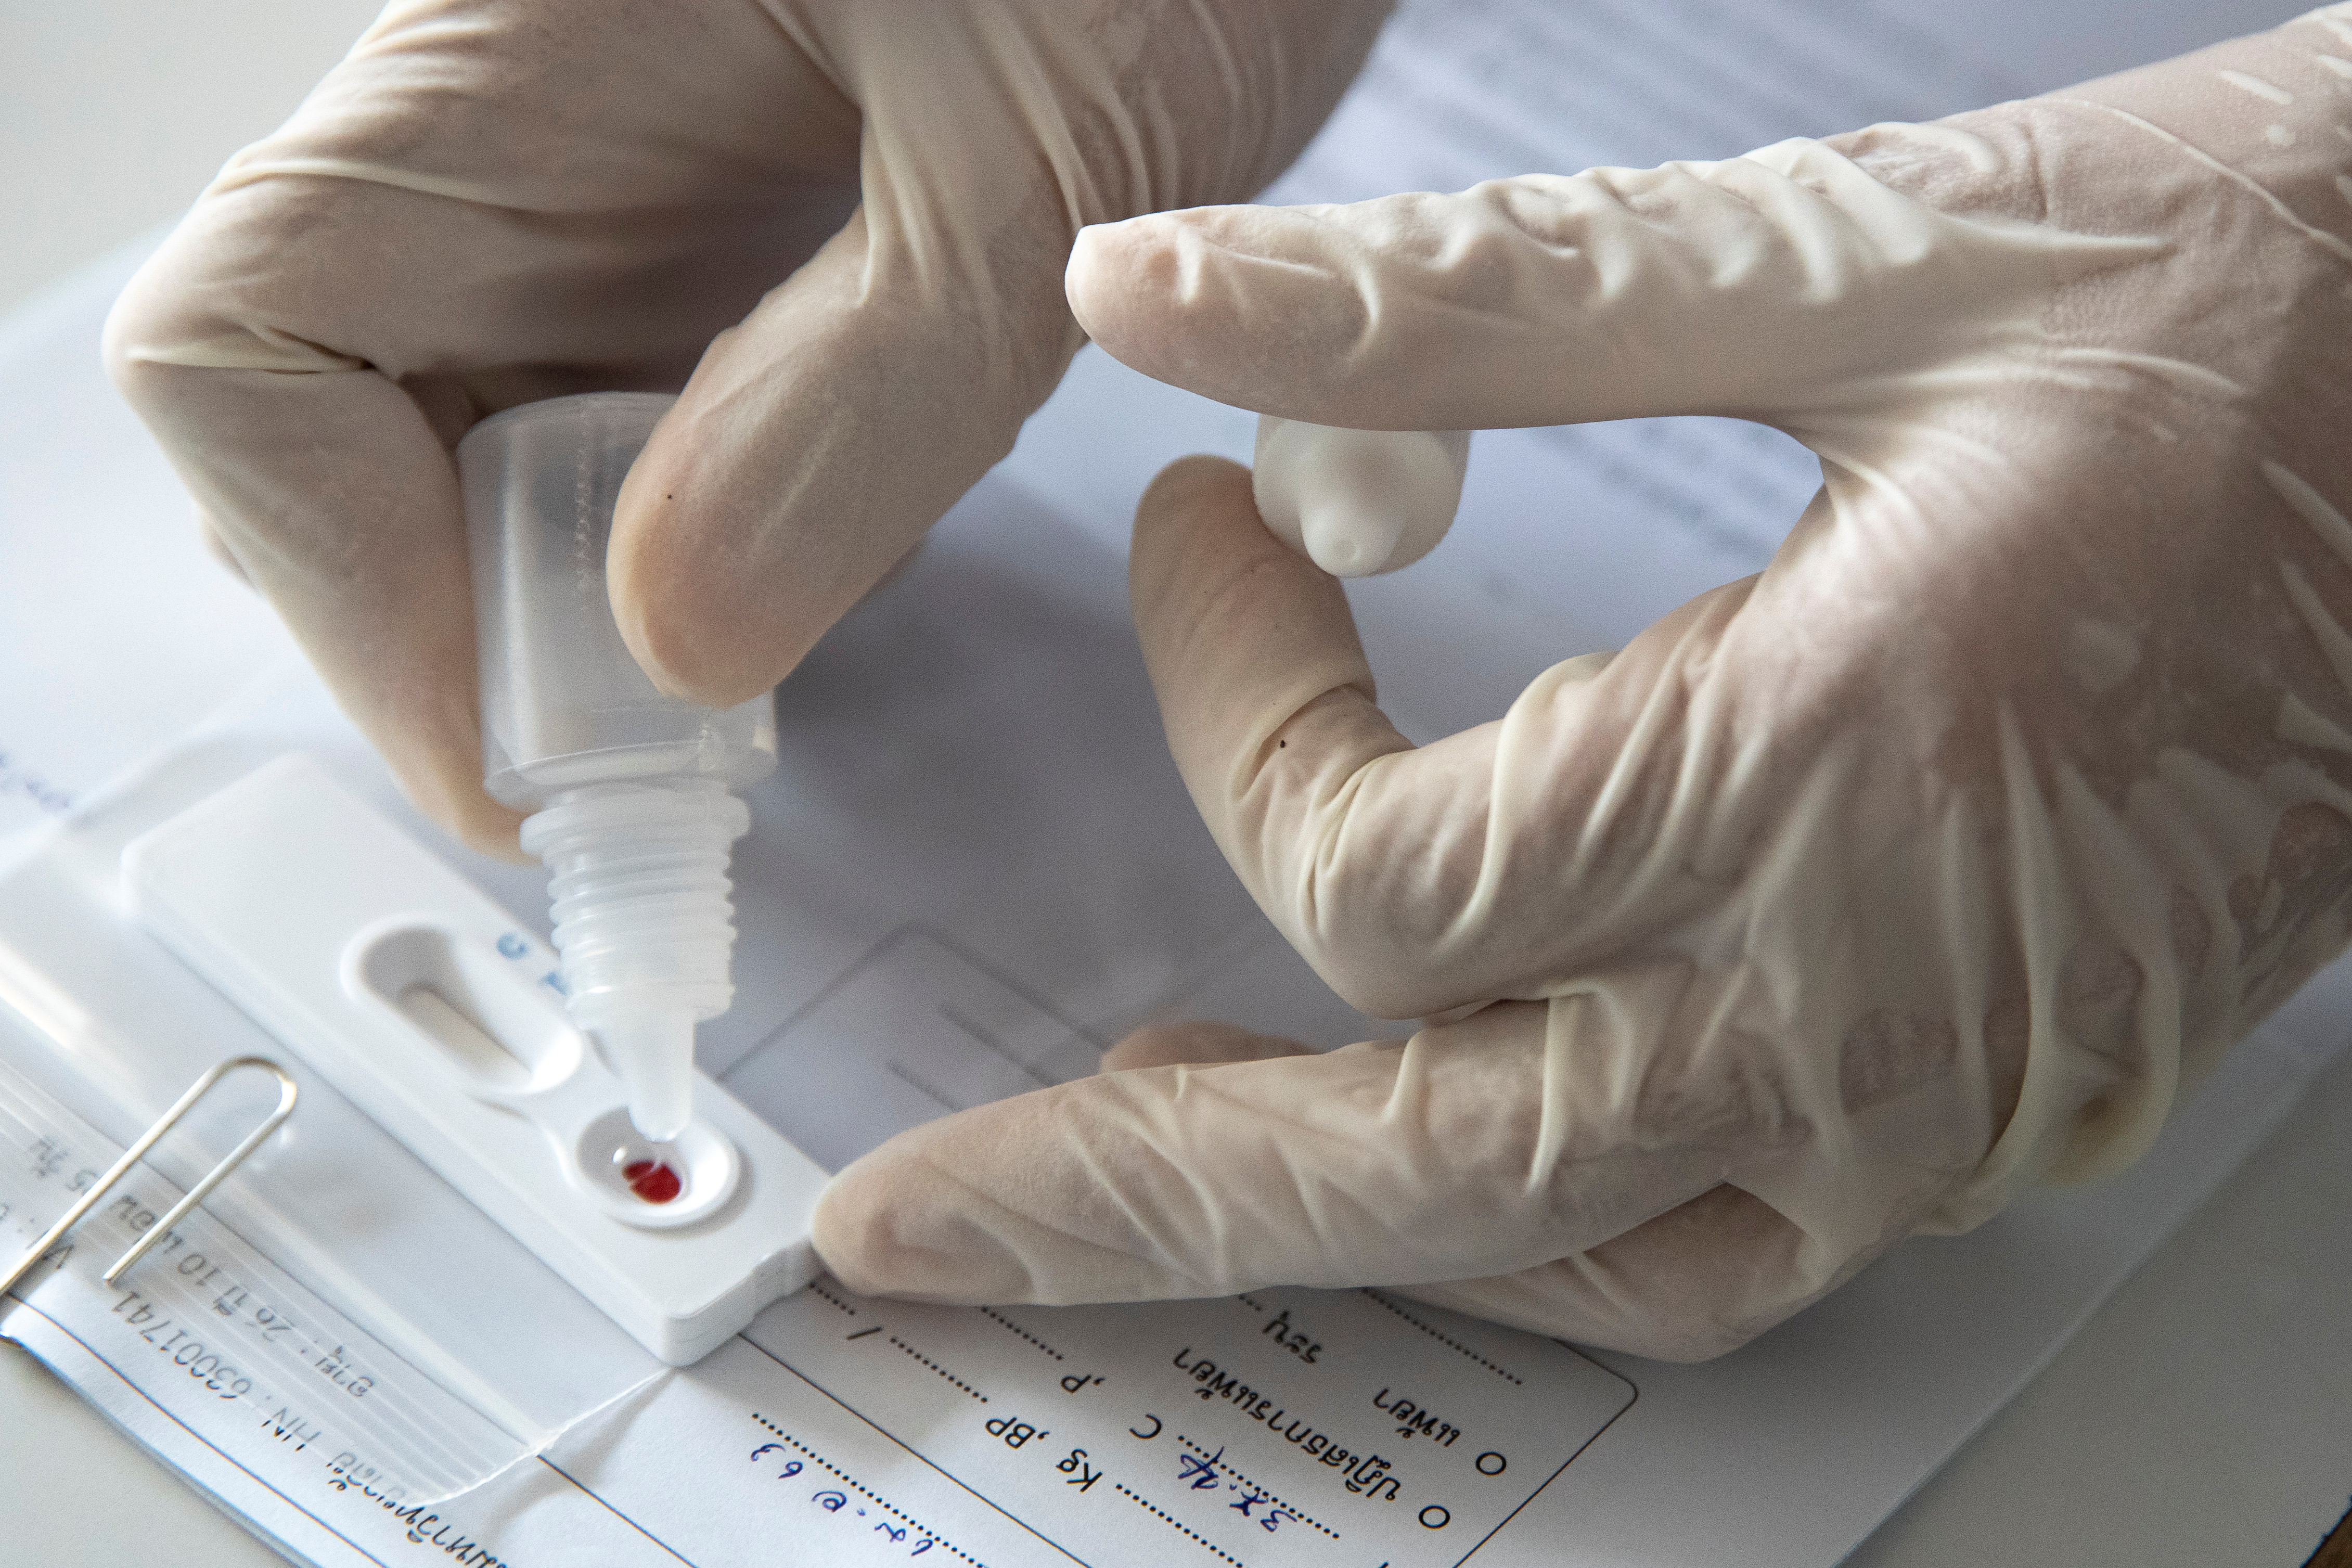 EEUU aprobó un nuevo test de coronavirus con saliva recolectada en el hogar